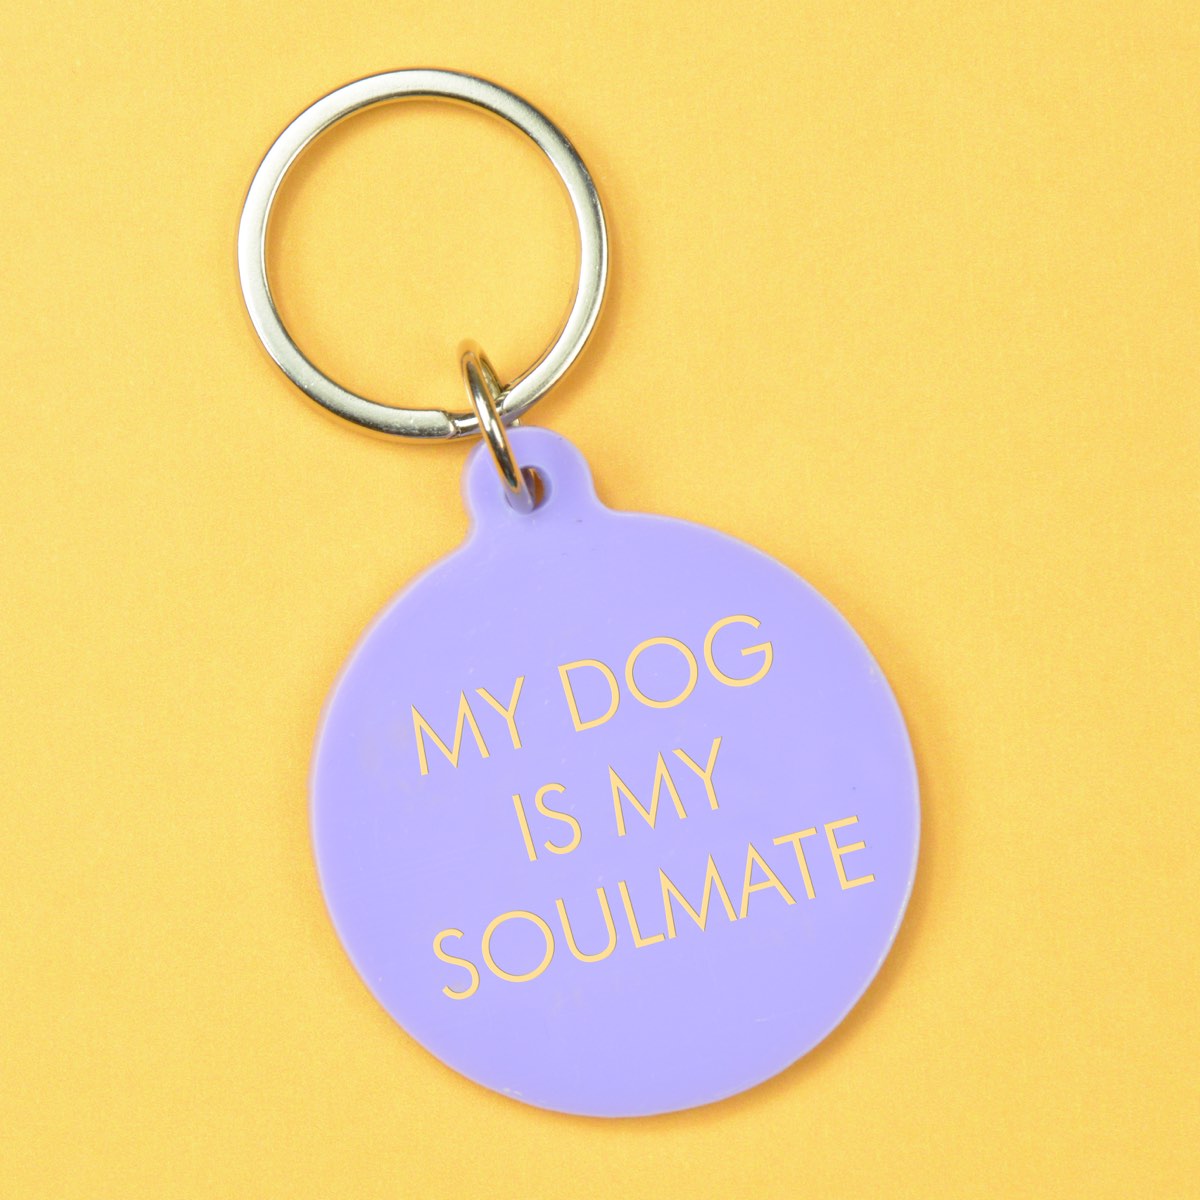 Schlüsselanhänger "My dog is my soulmate"